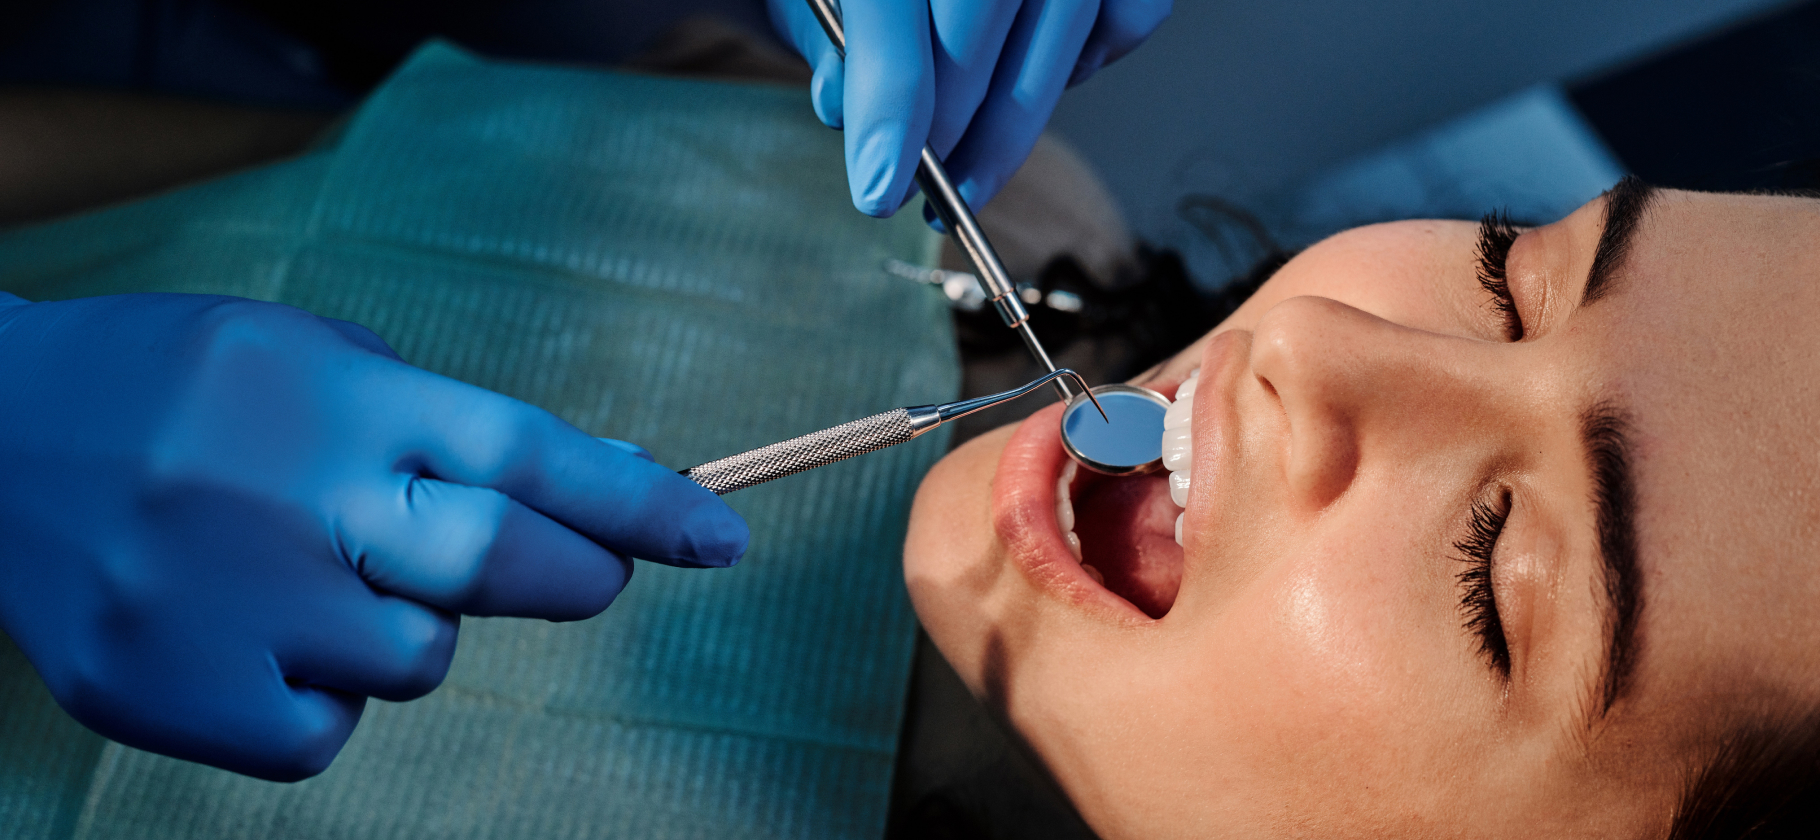 «Пришлось отвыкнуть кусать и привыкнуть к боли»: 8 шокирующих историй о лечении зубов